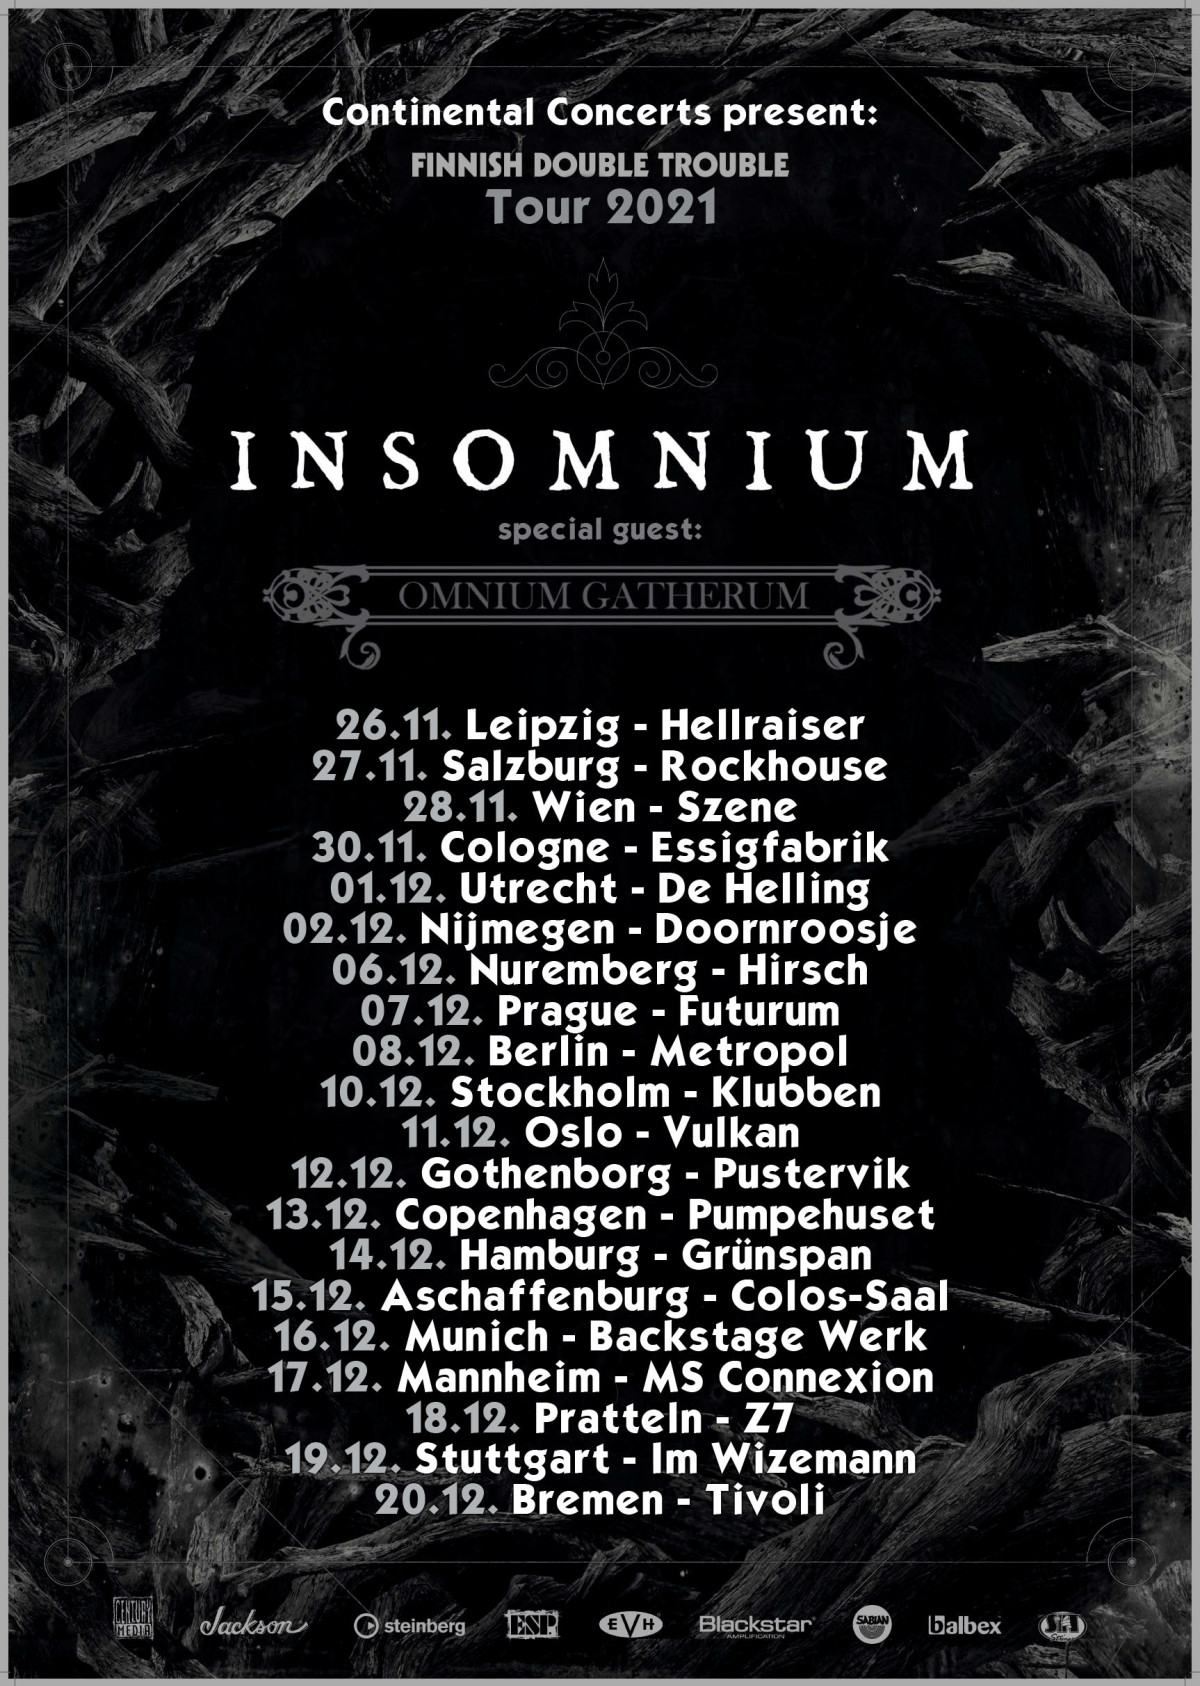 INSOMNIUM and OMNIUM GATHERUM announce new European tour dates for 2021